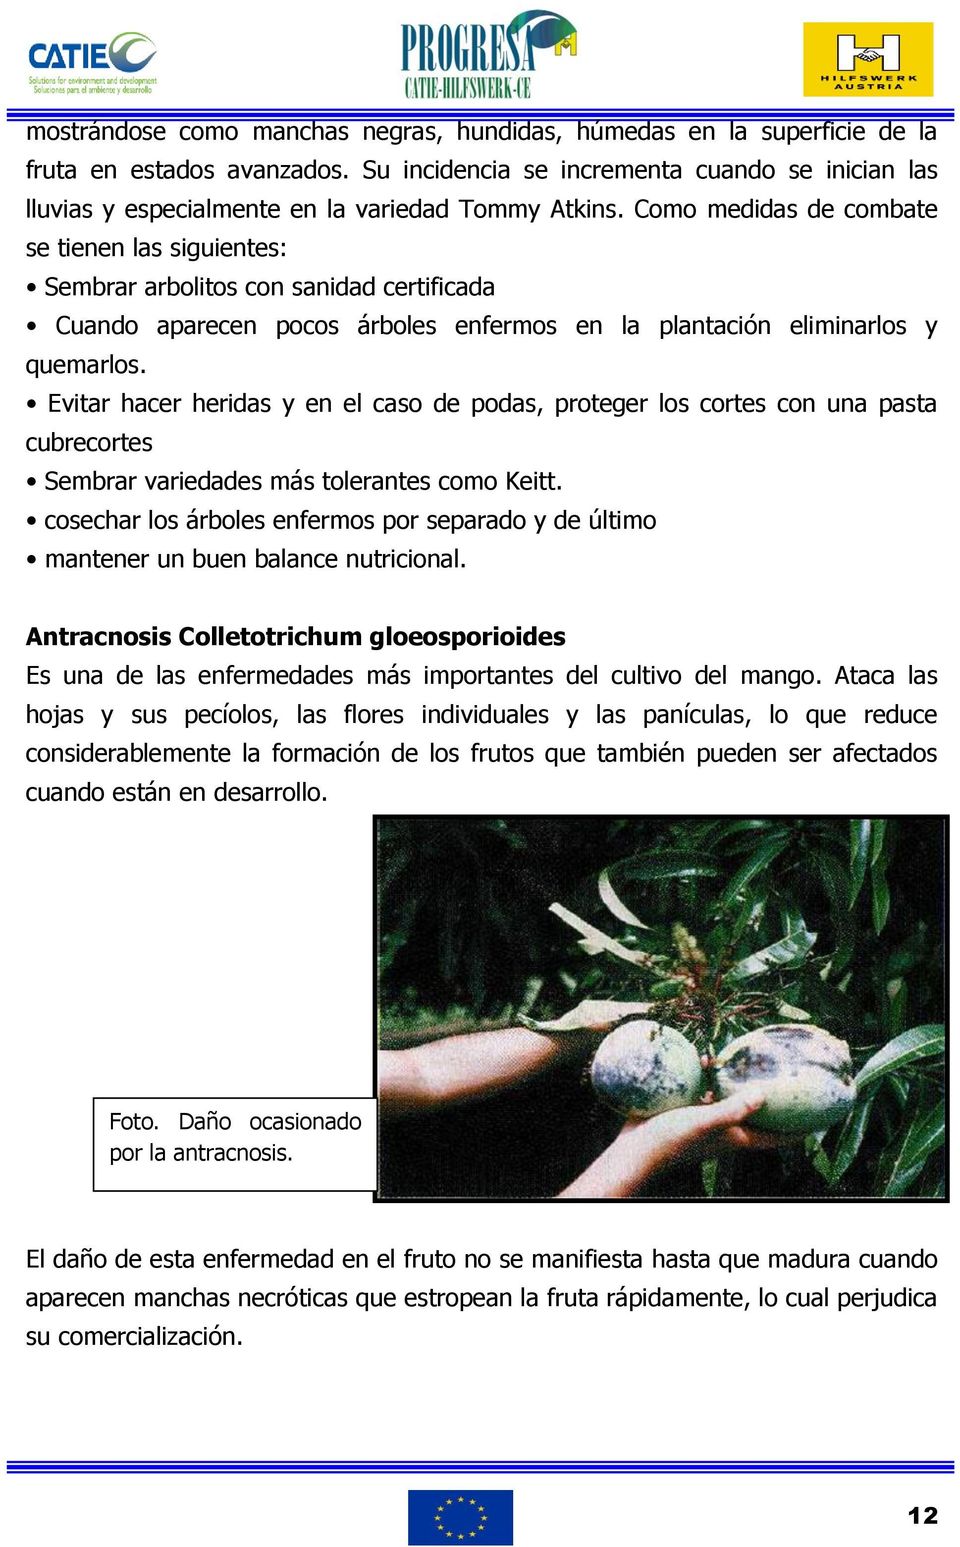 Como medidas de combate se tienen las siguientes: Sembrar arbolitos con sanidad certificada Cuando aparecen pocos árboles enfermos en la plantación eliminarlos y quemarlos.